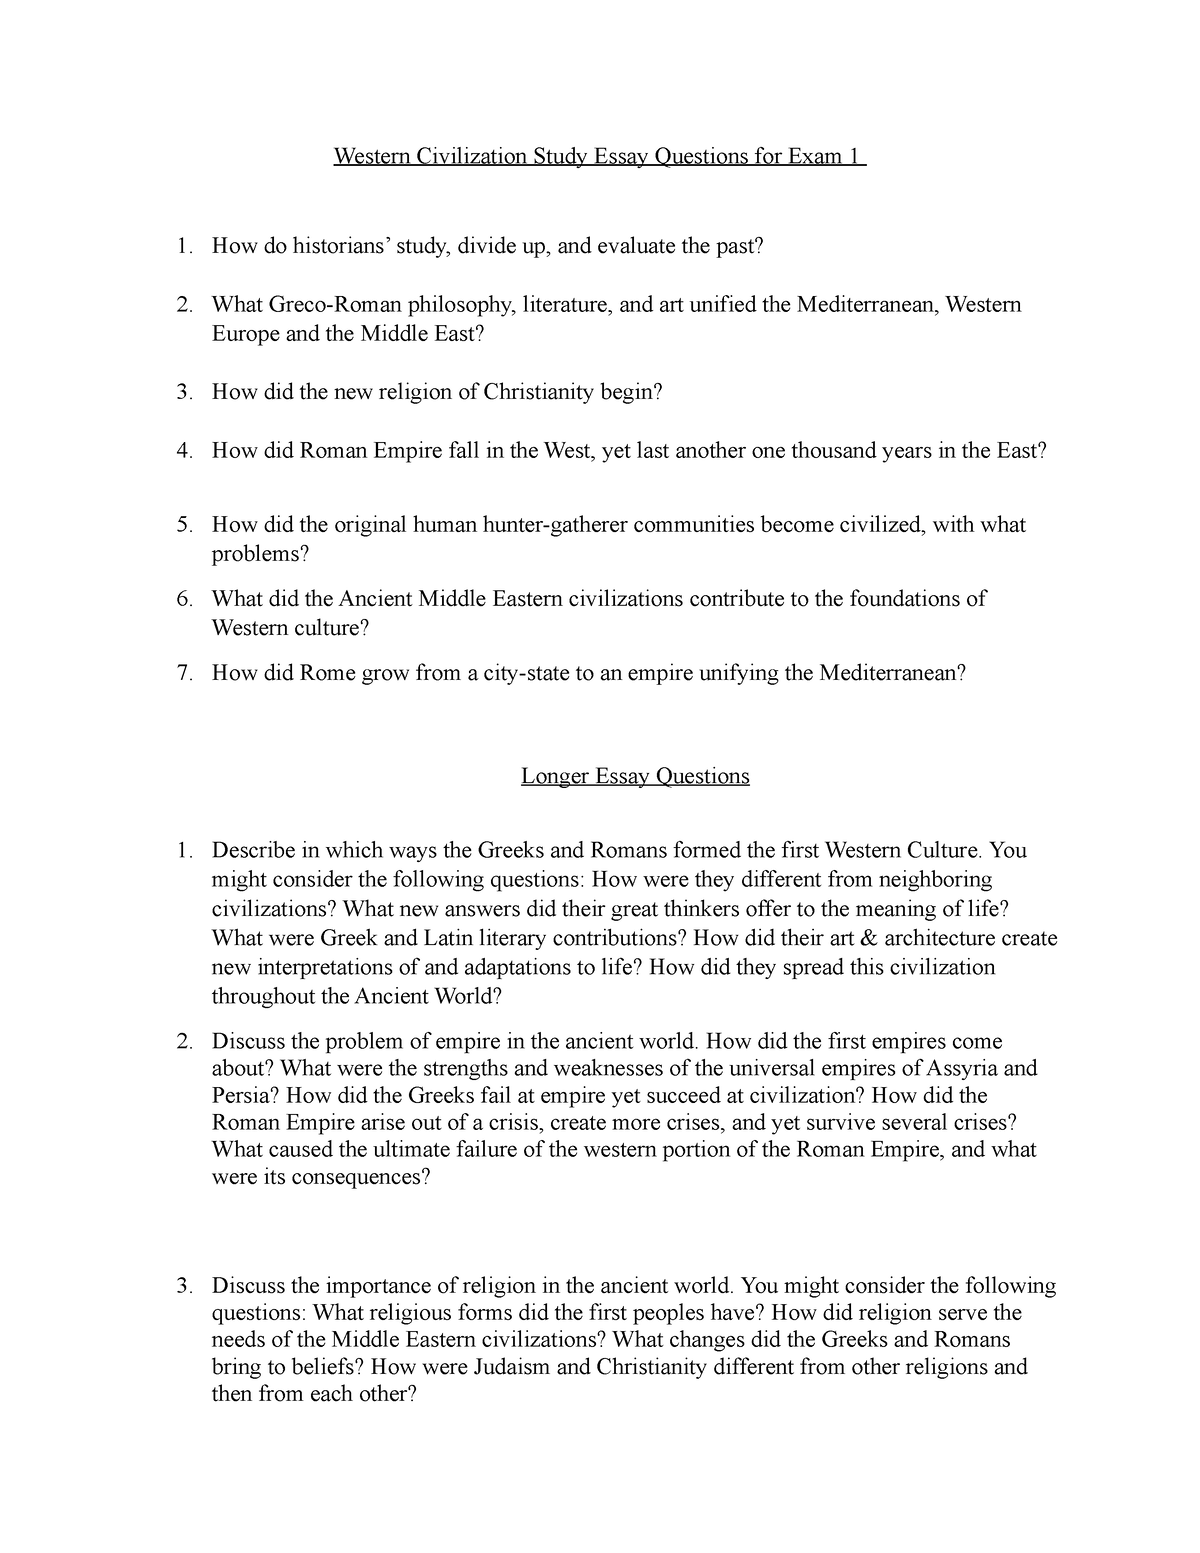 western culture essay pdf